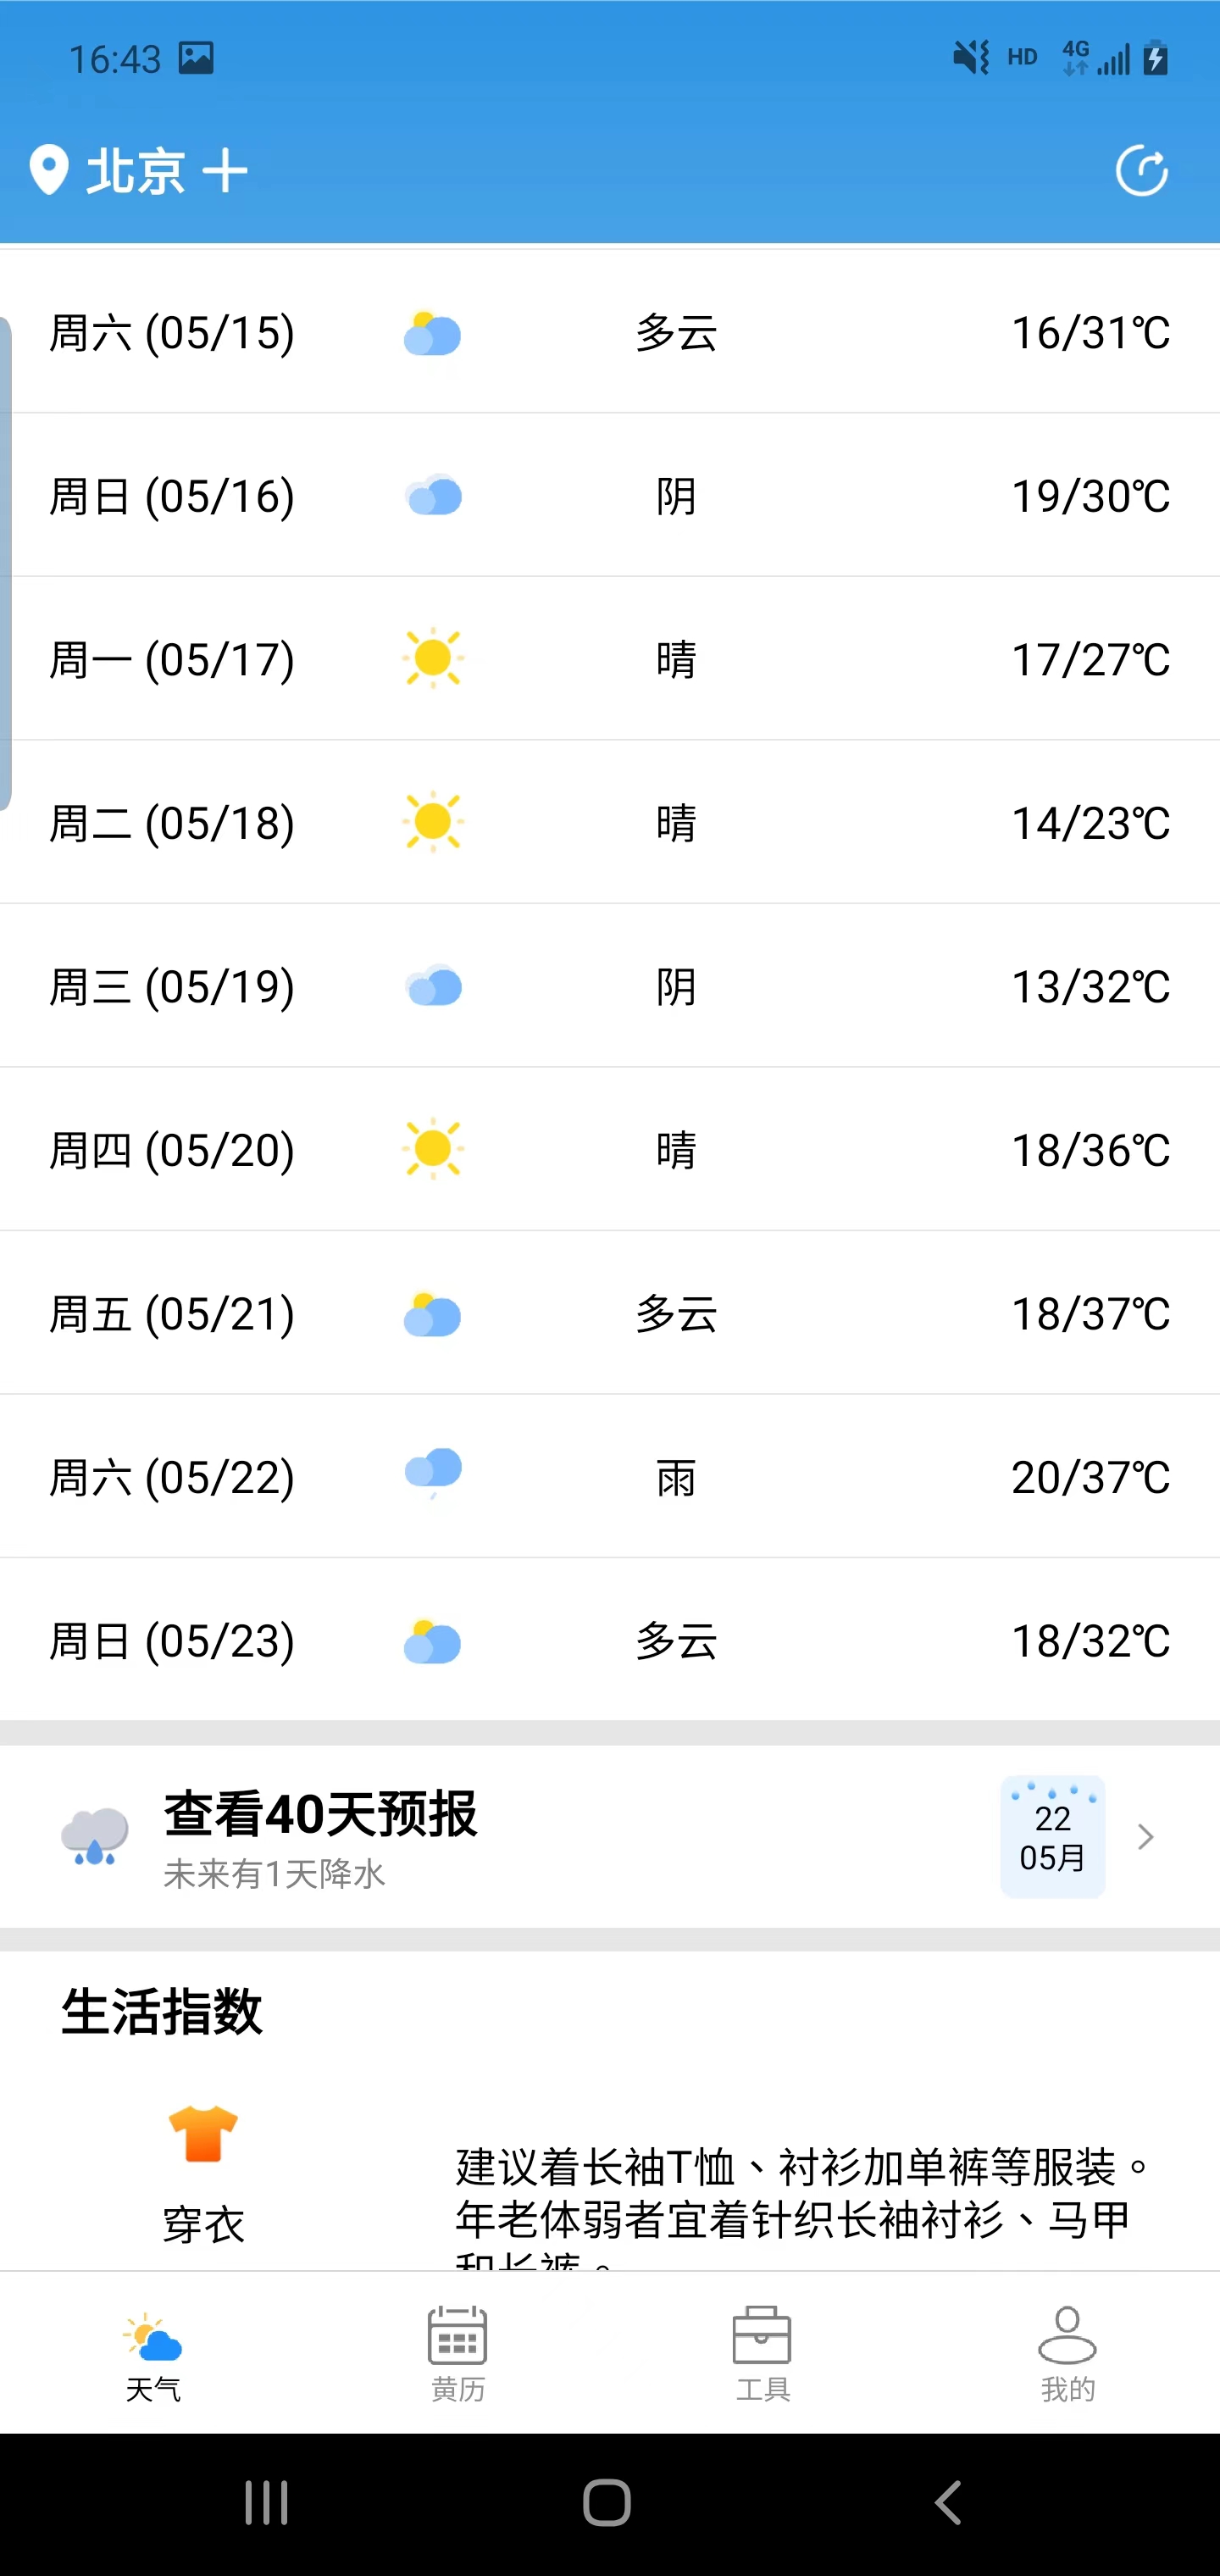 安易天气app下载,安易天气app官方版 v2.2.6